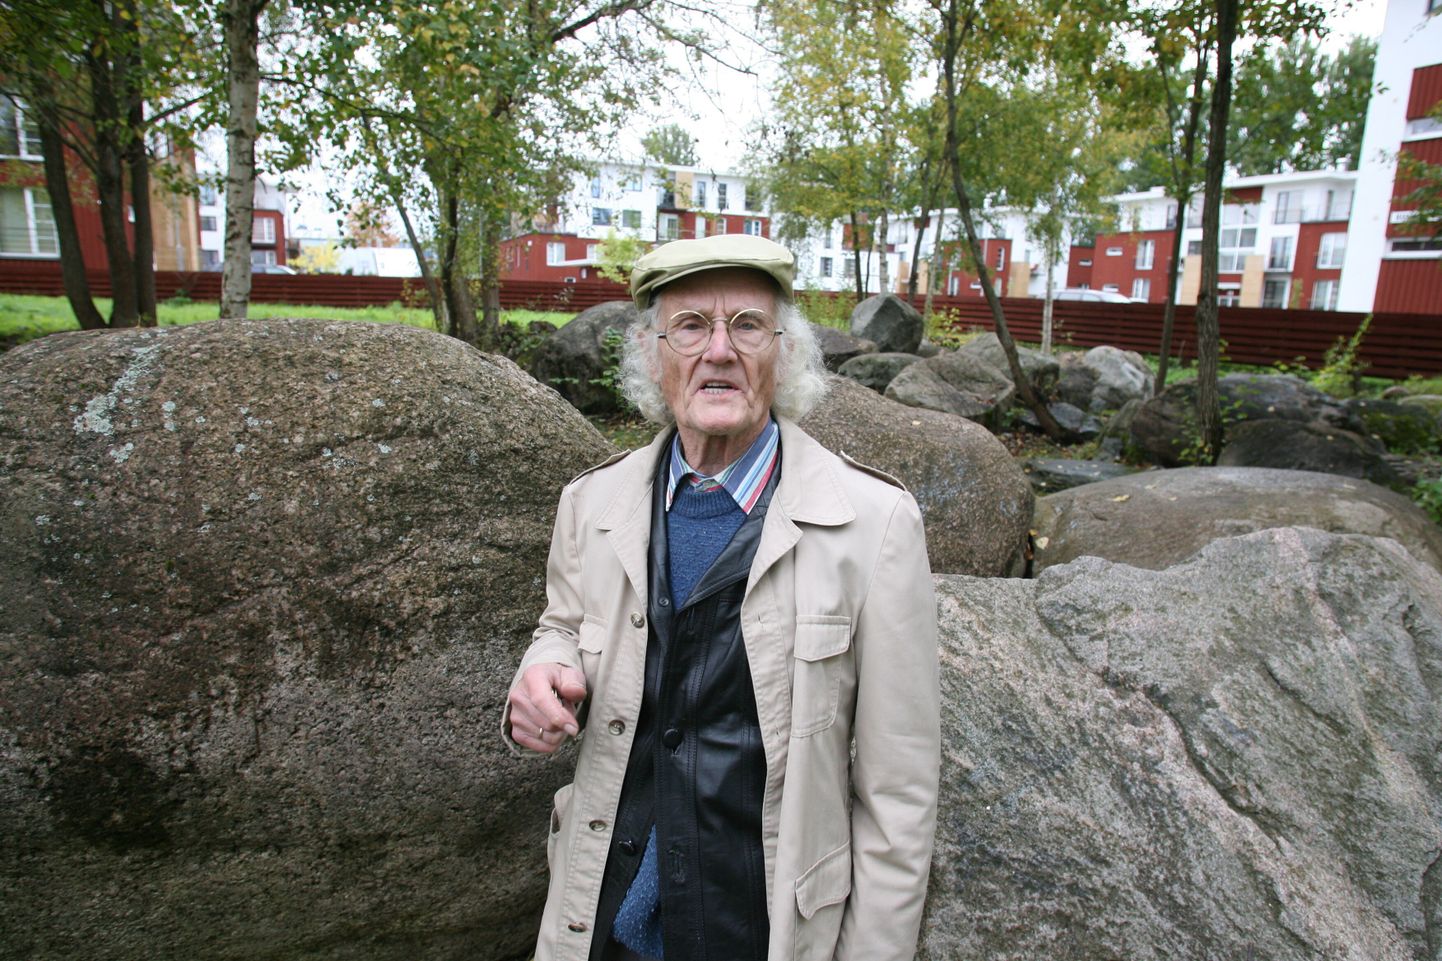 Pildistatud teisipäeval, 29. septembril 2009.
Skulptor Endel Taniloo tahab kinkida suured rändrahnud Tartu linnale, et need leiaksid endale koha Taara tammikus.